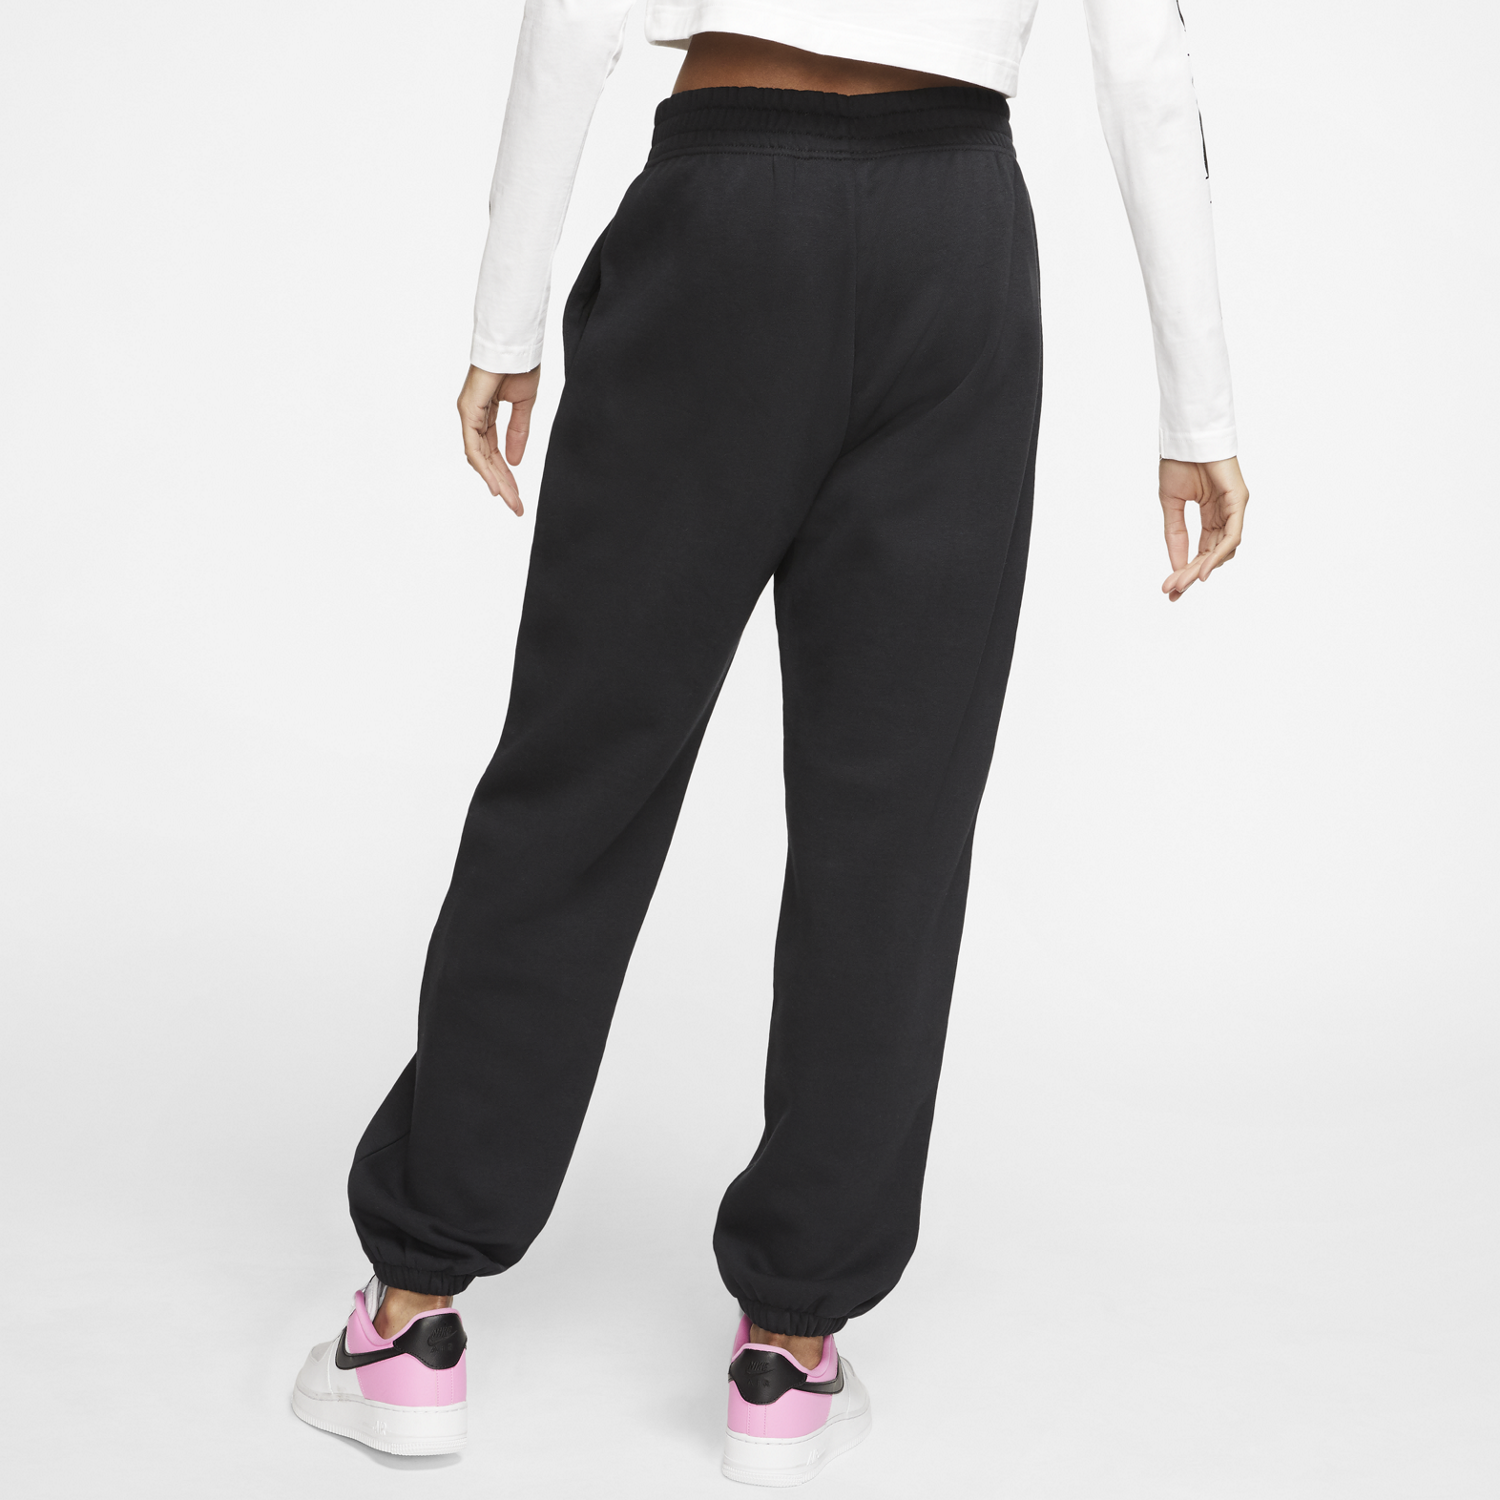 Nike Women's Fleece Pants Trousers Bottoms Sportswear Essential